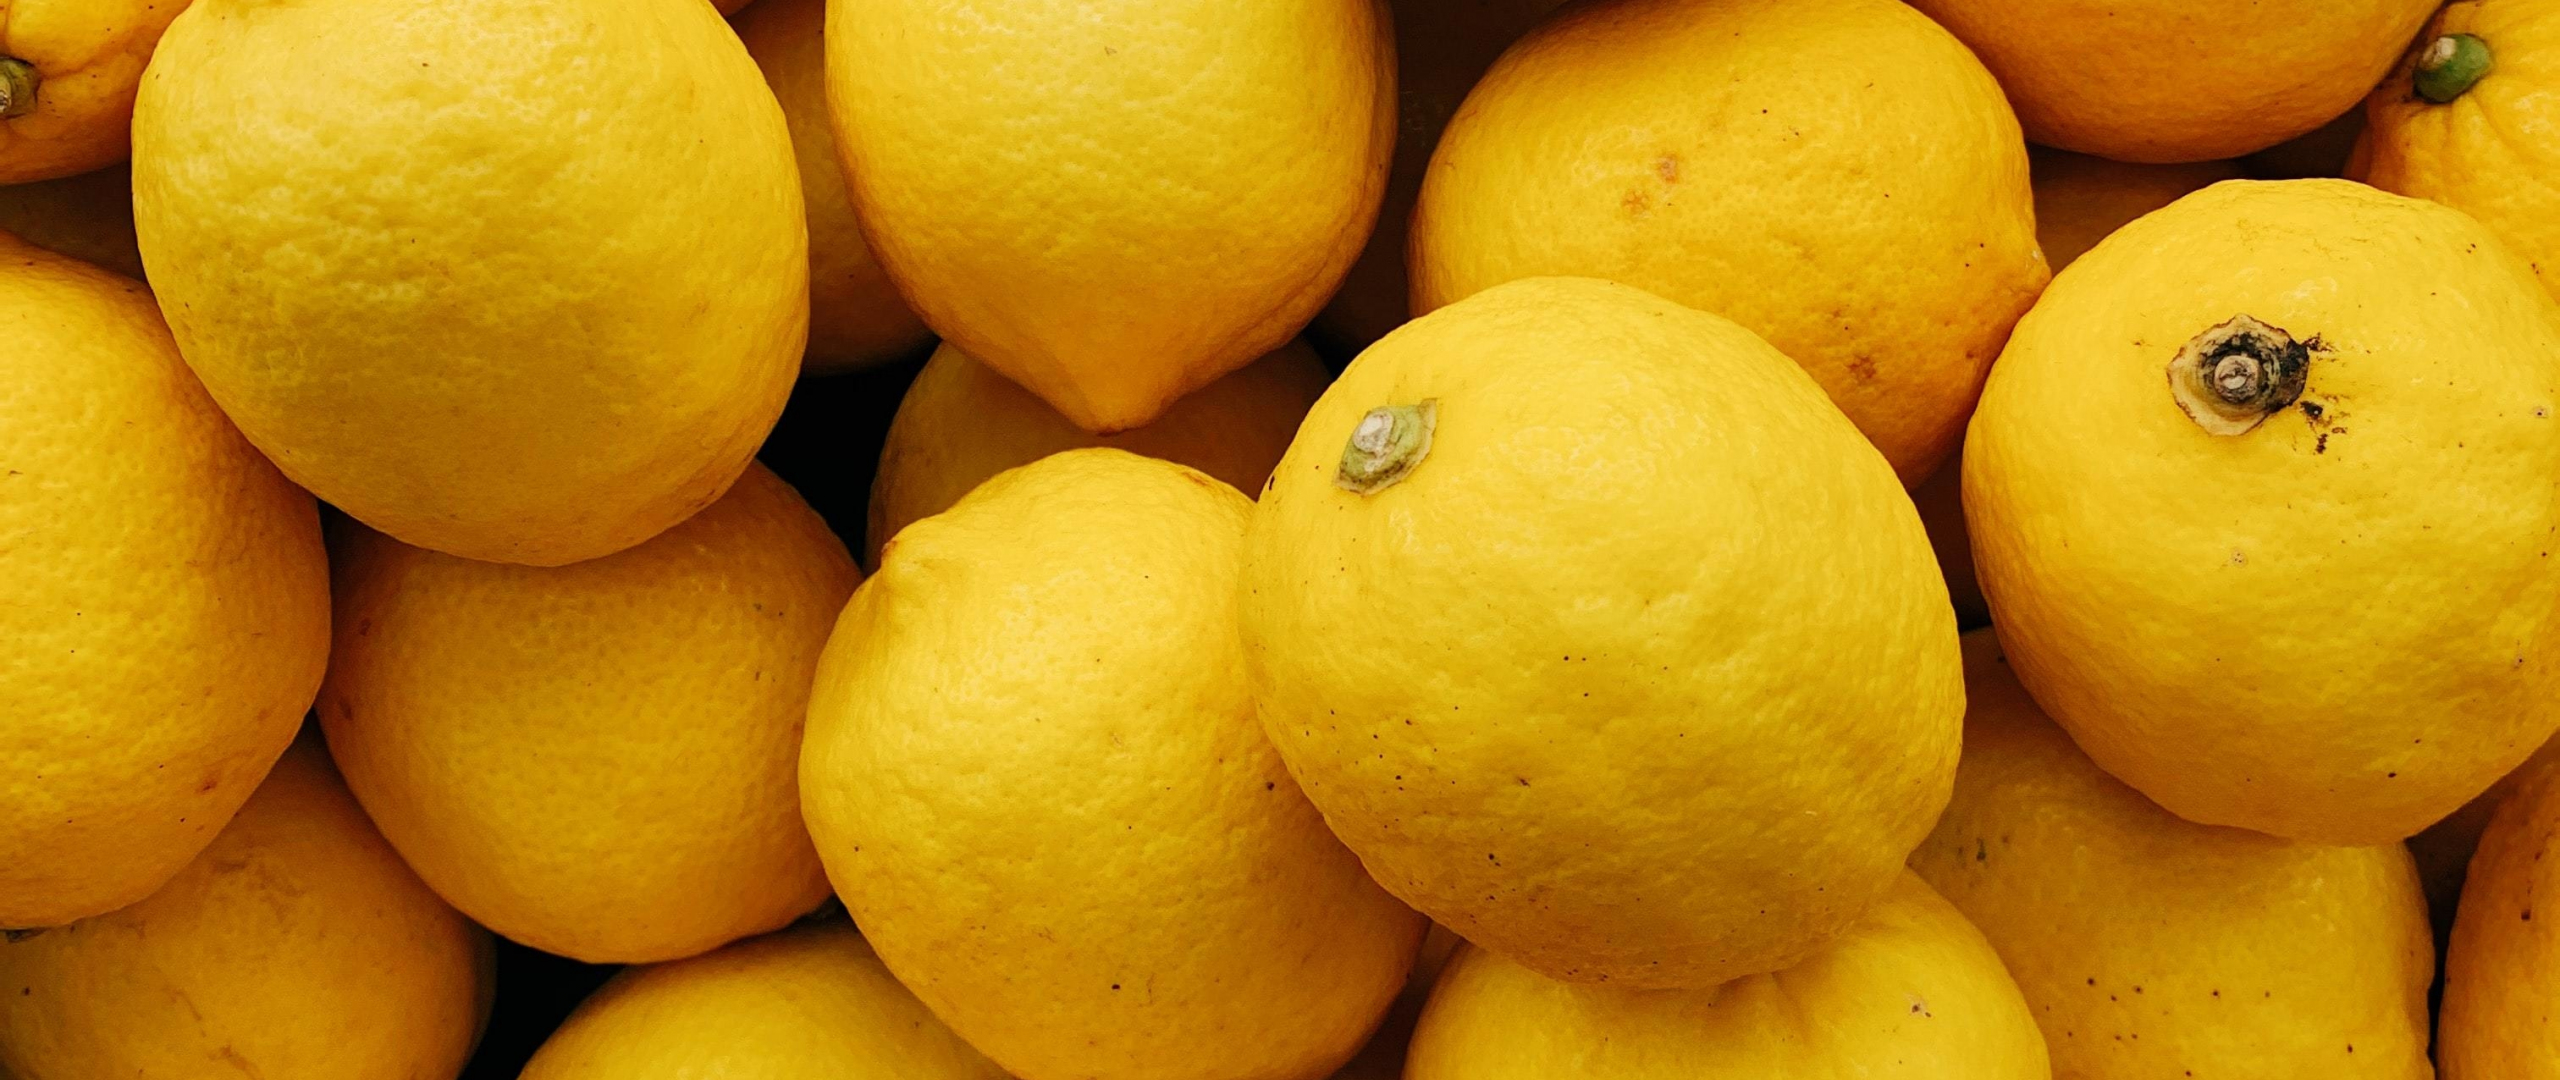 Желтые фрукты названия. Желтый фрукт. Жёлтые фрукты названия. Фрукты желтого цвета большие. Желтый фрукт похожий на лимон.